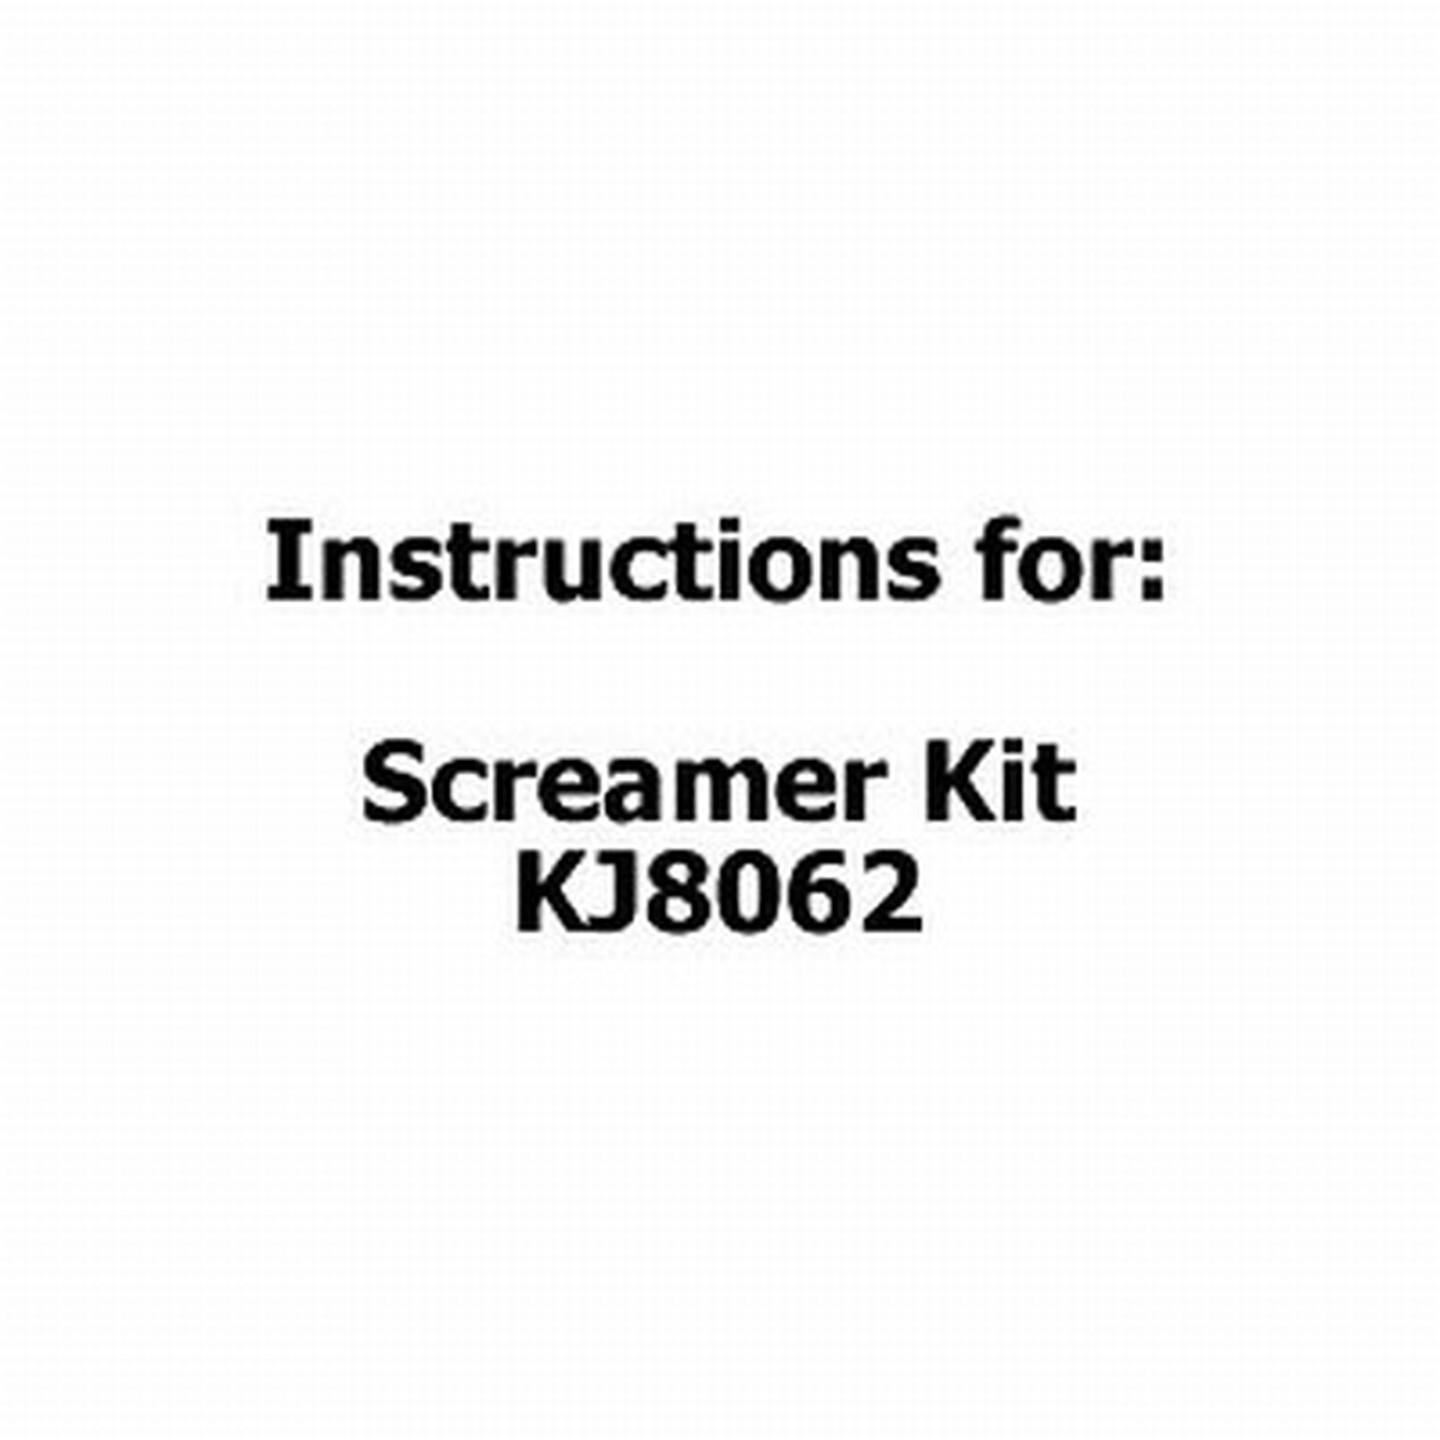 Instructions for Screamer Kit KJ8062